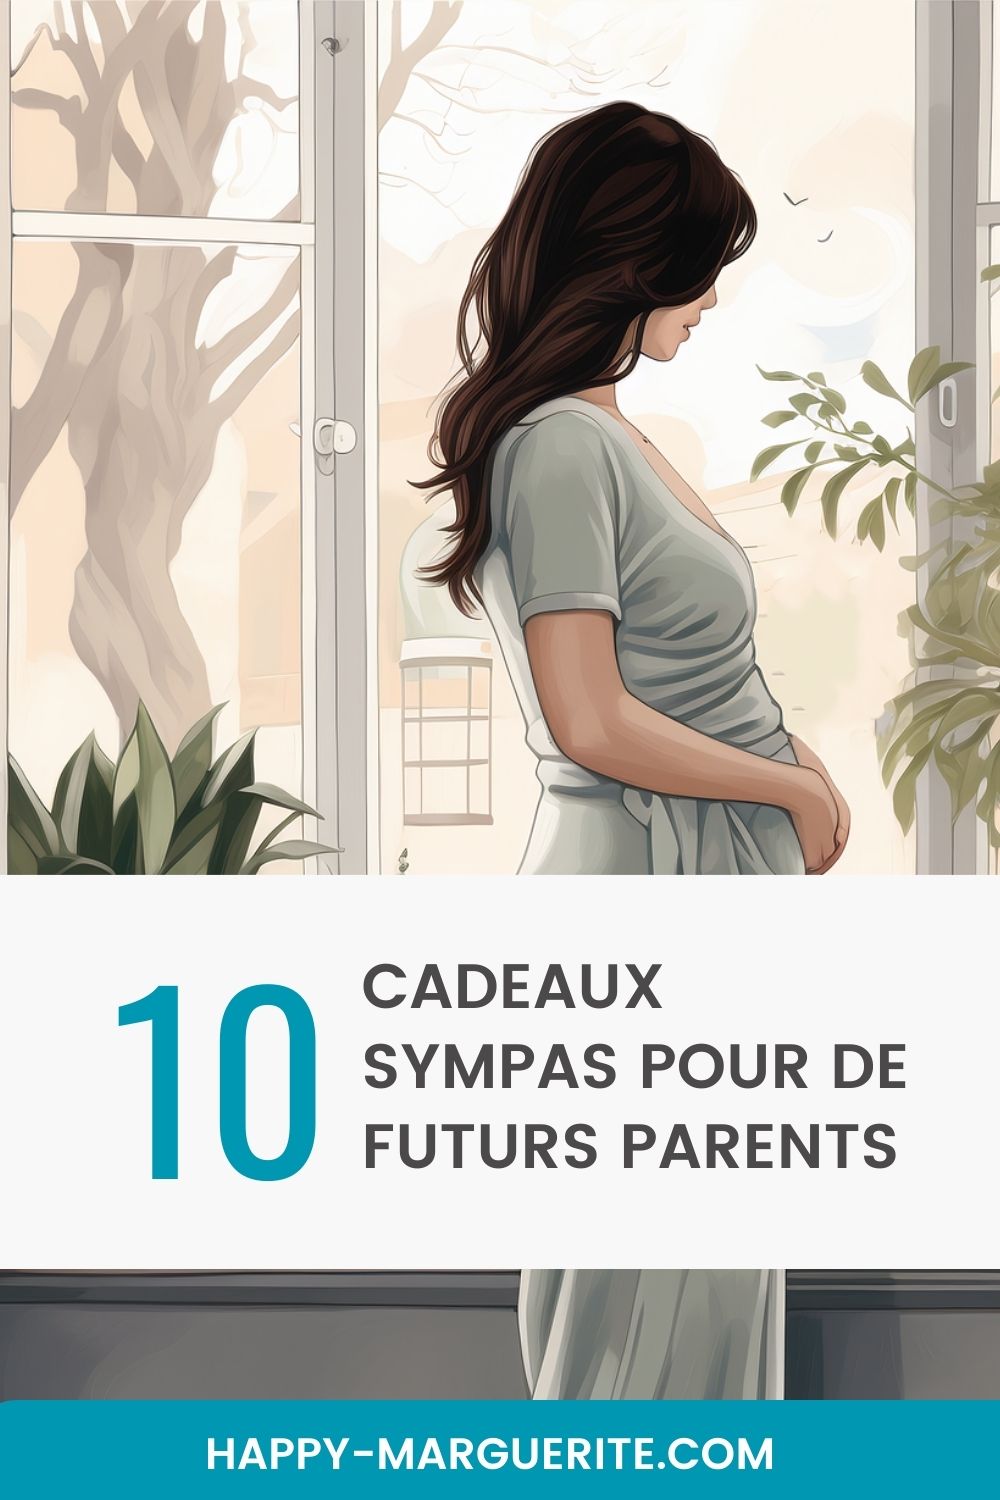 10 cadeaux originaux pour grossesse et futurs parents - Happy